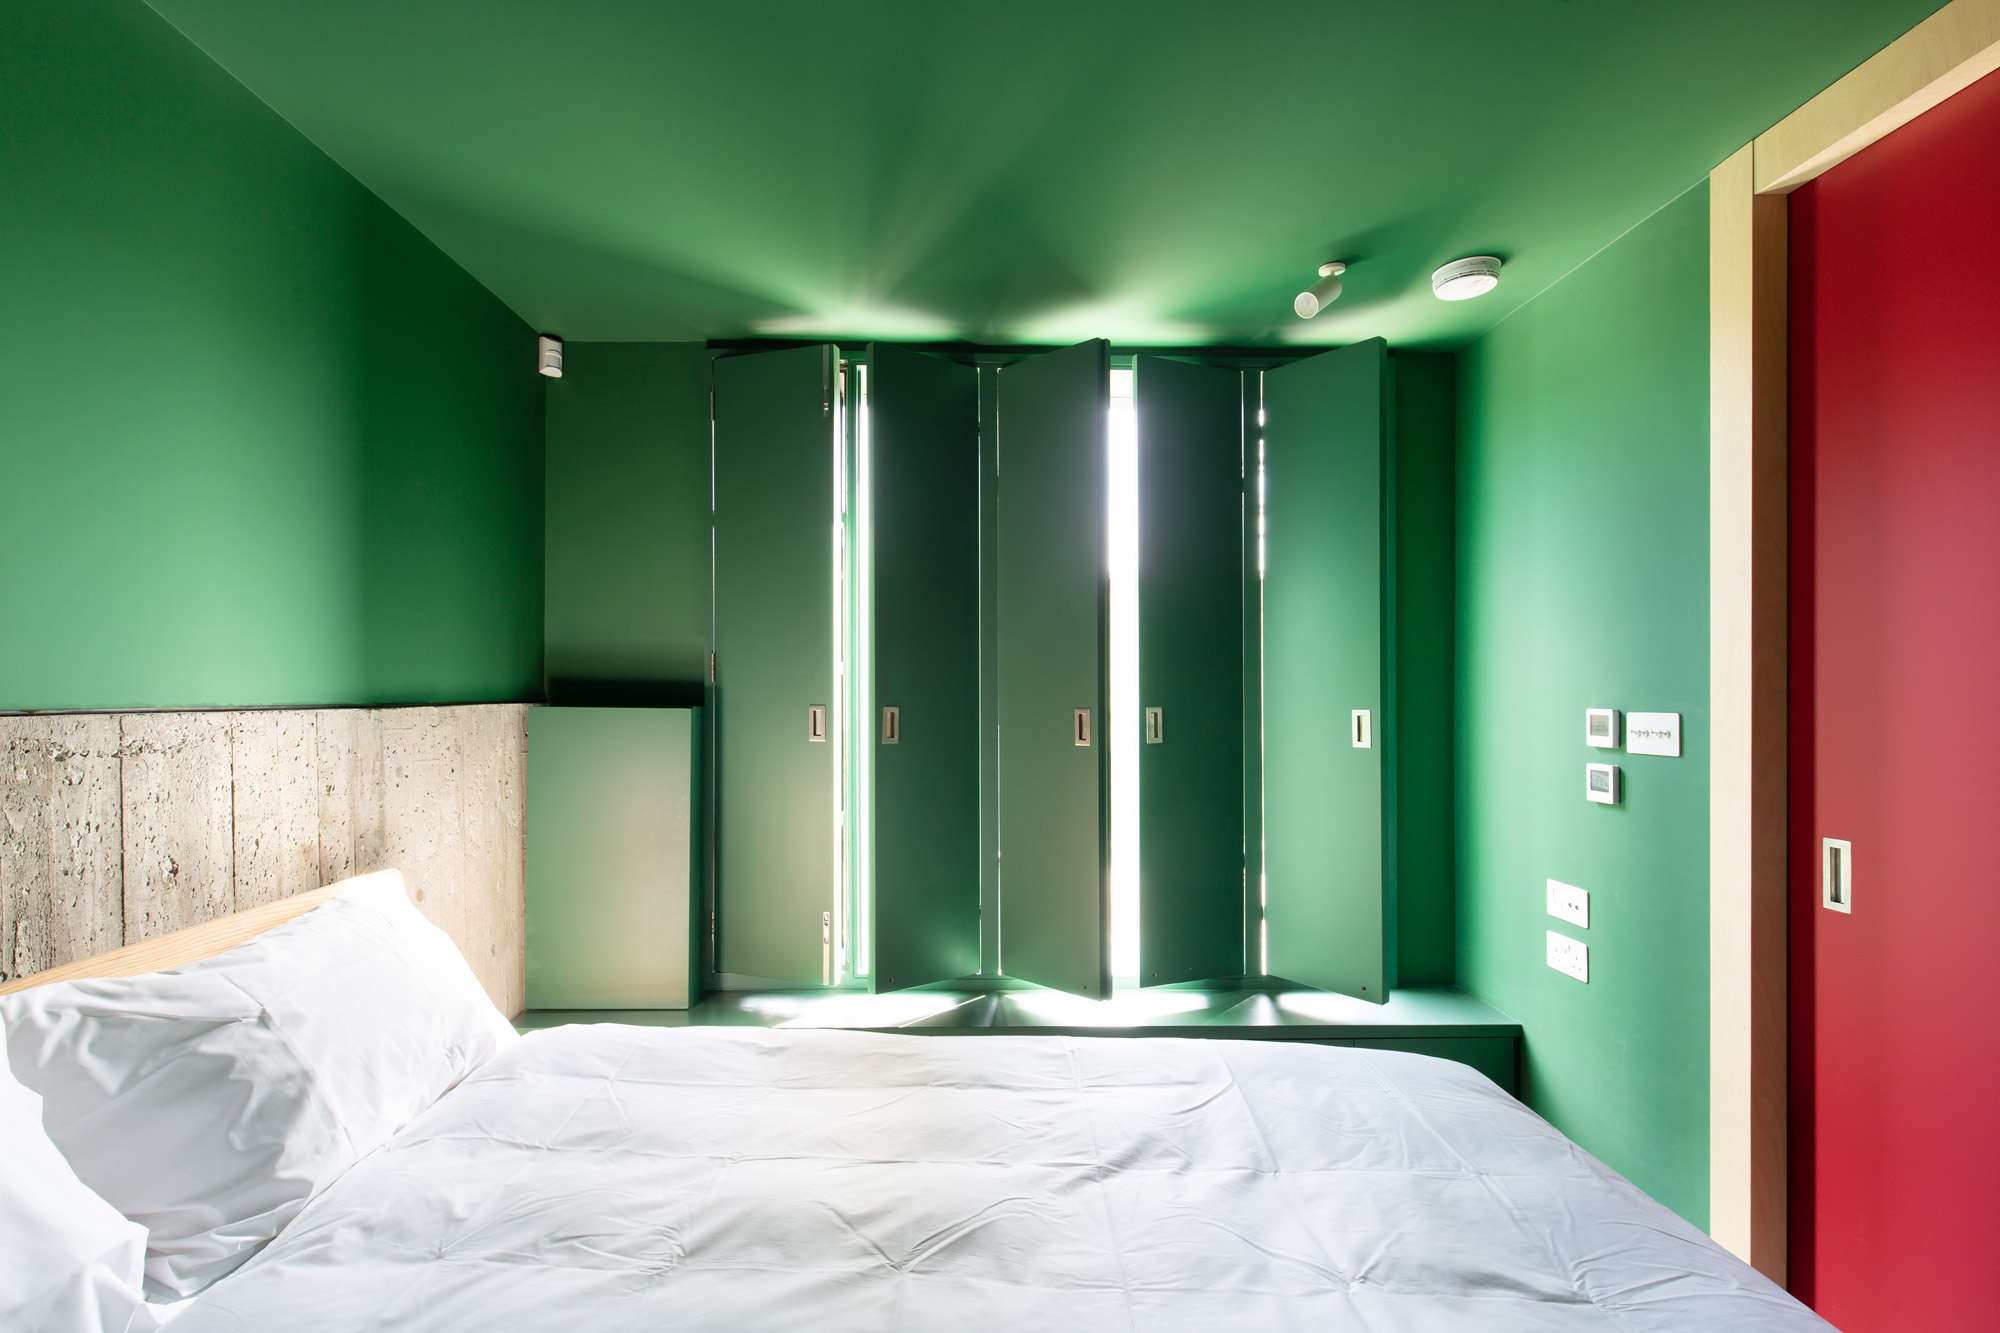 Green bedroom by Teatum + Teatum